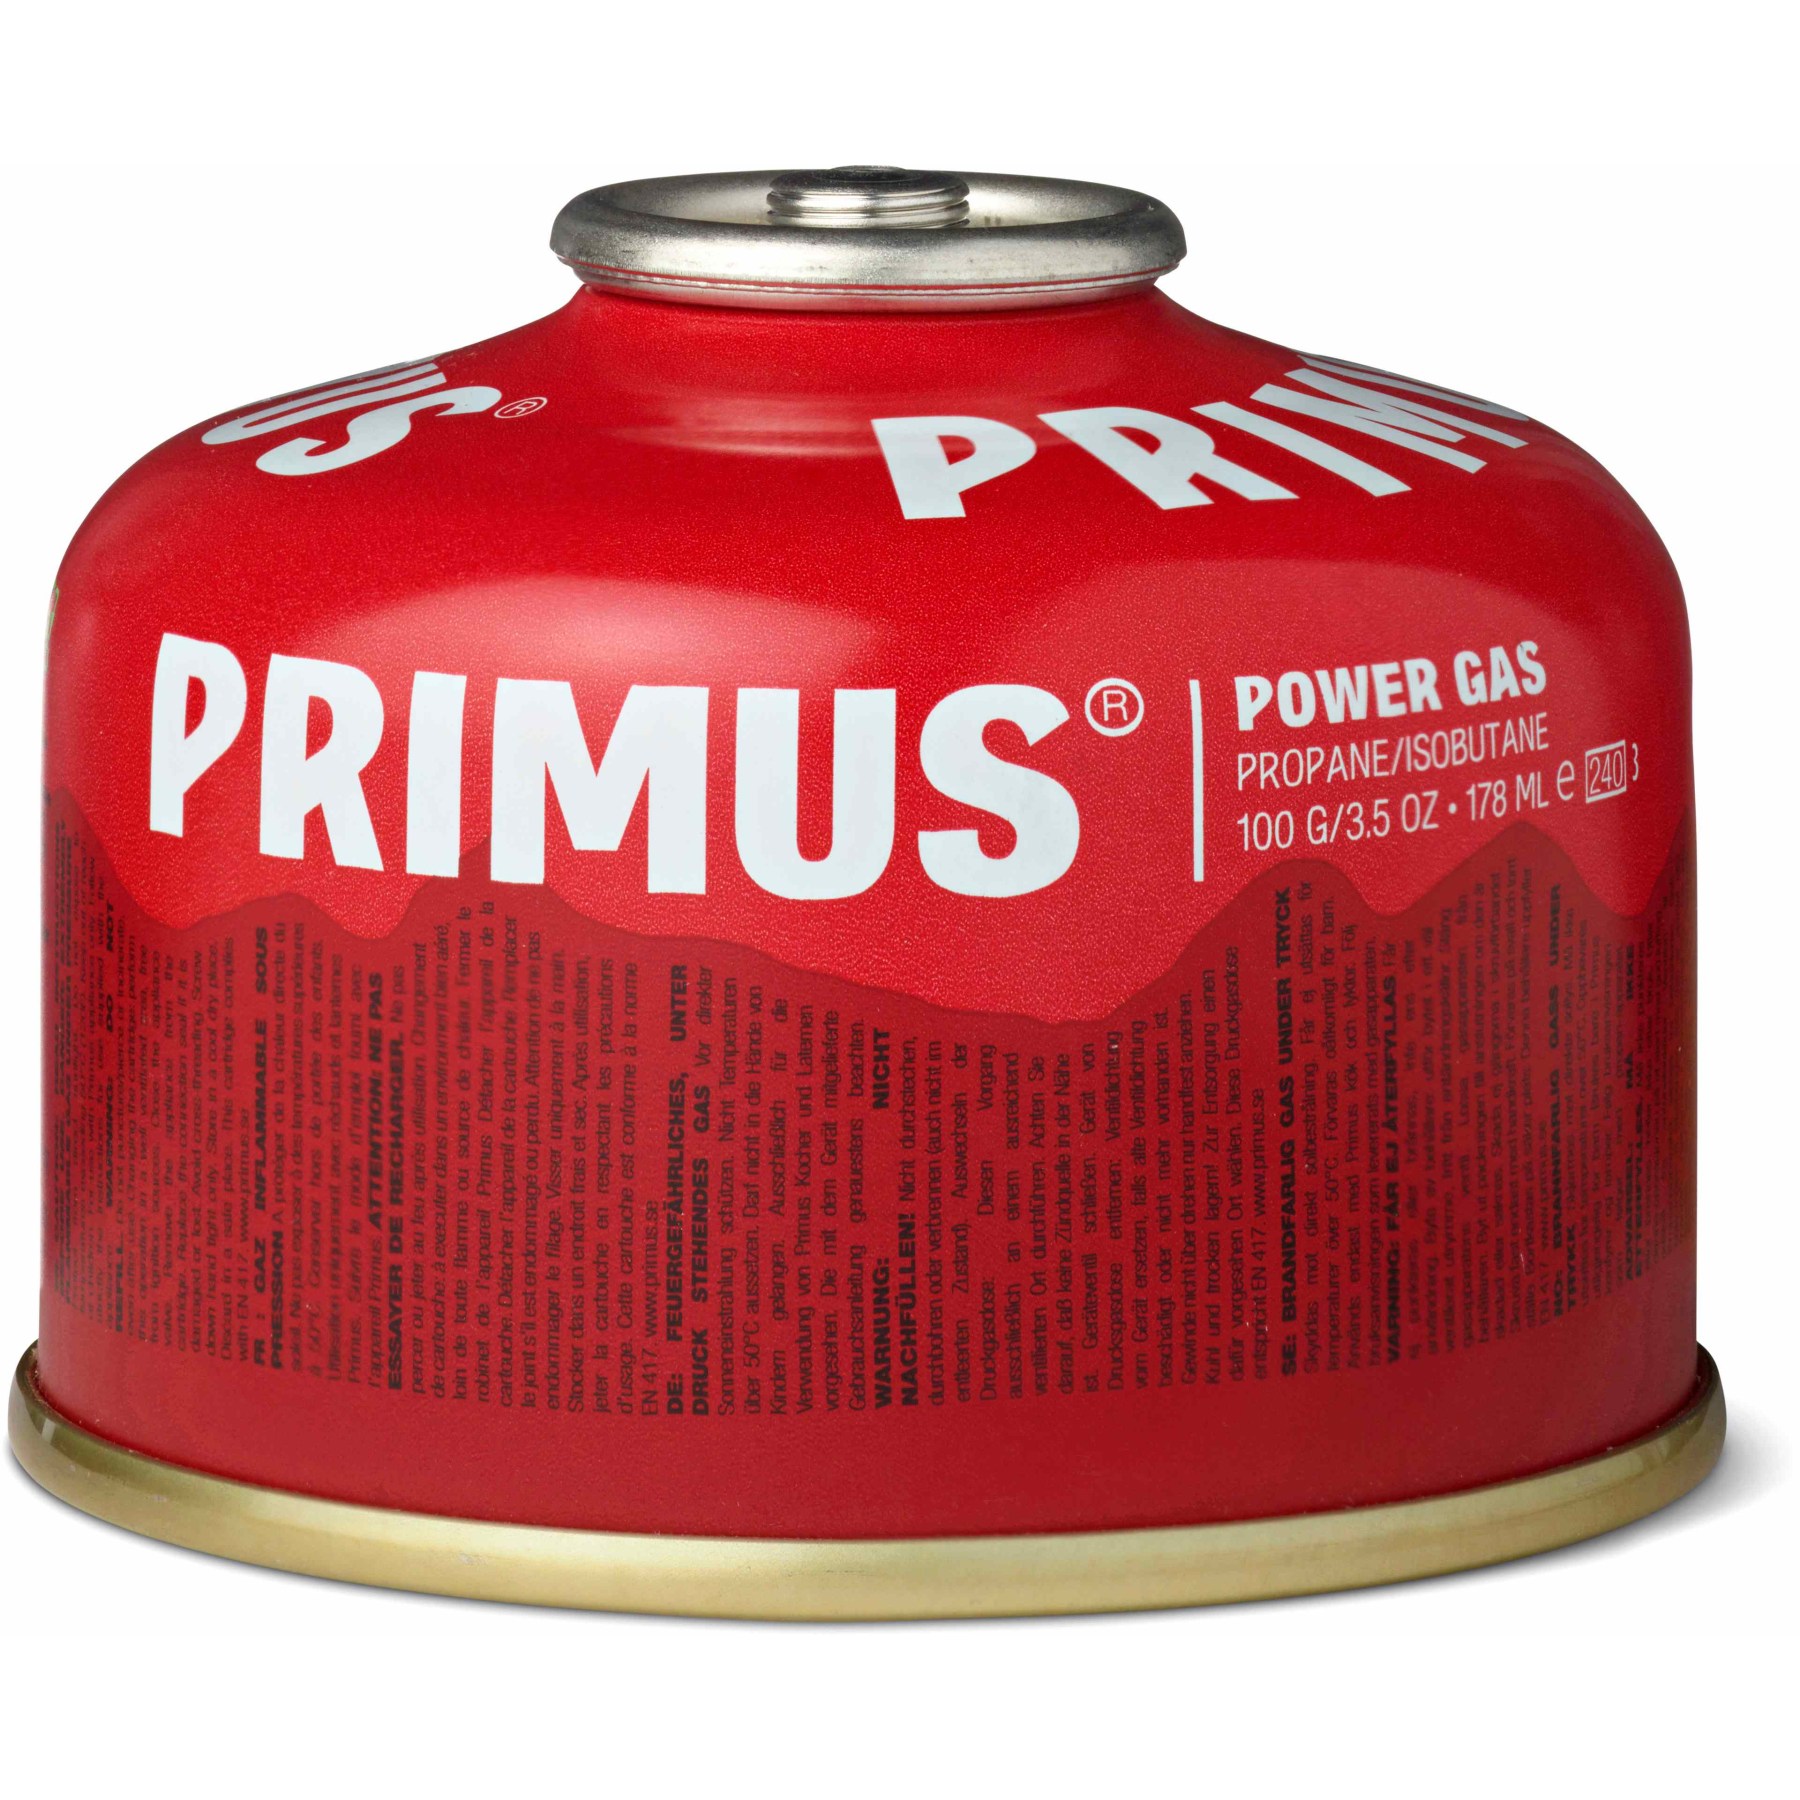 Productfoto van Primus Power Gas Steekpatroon - 100g